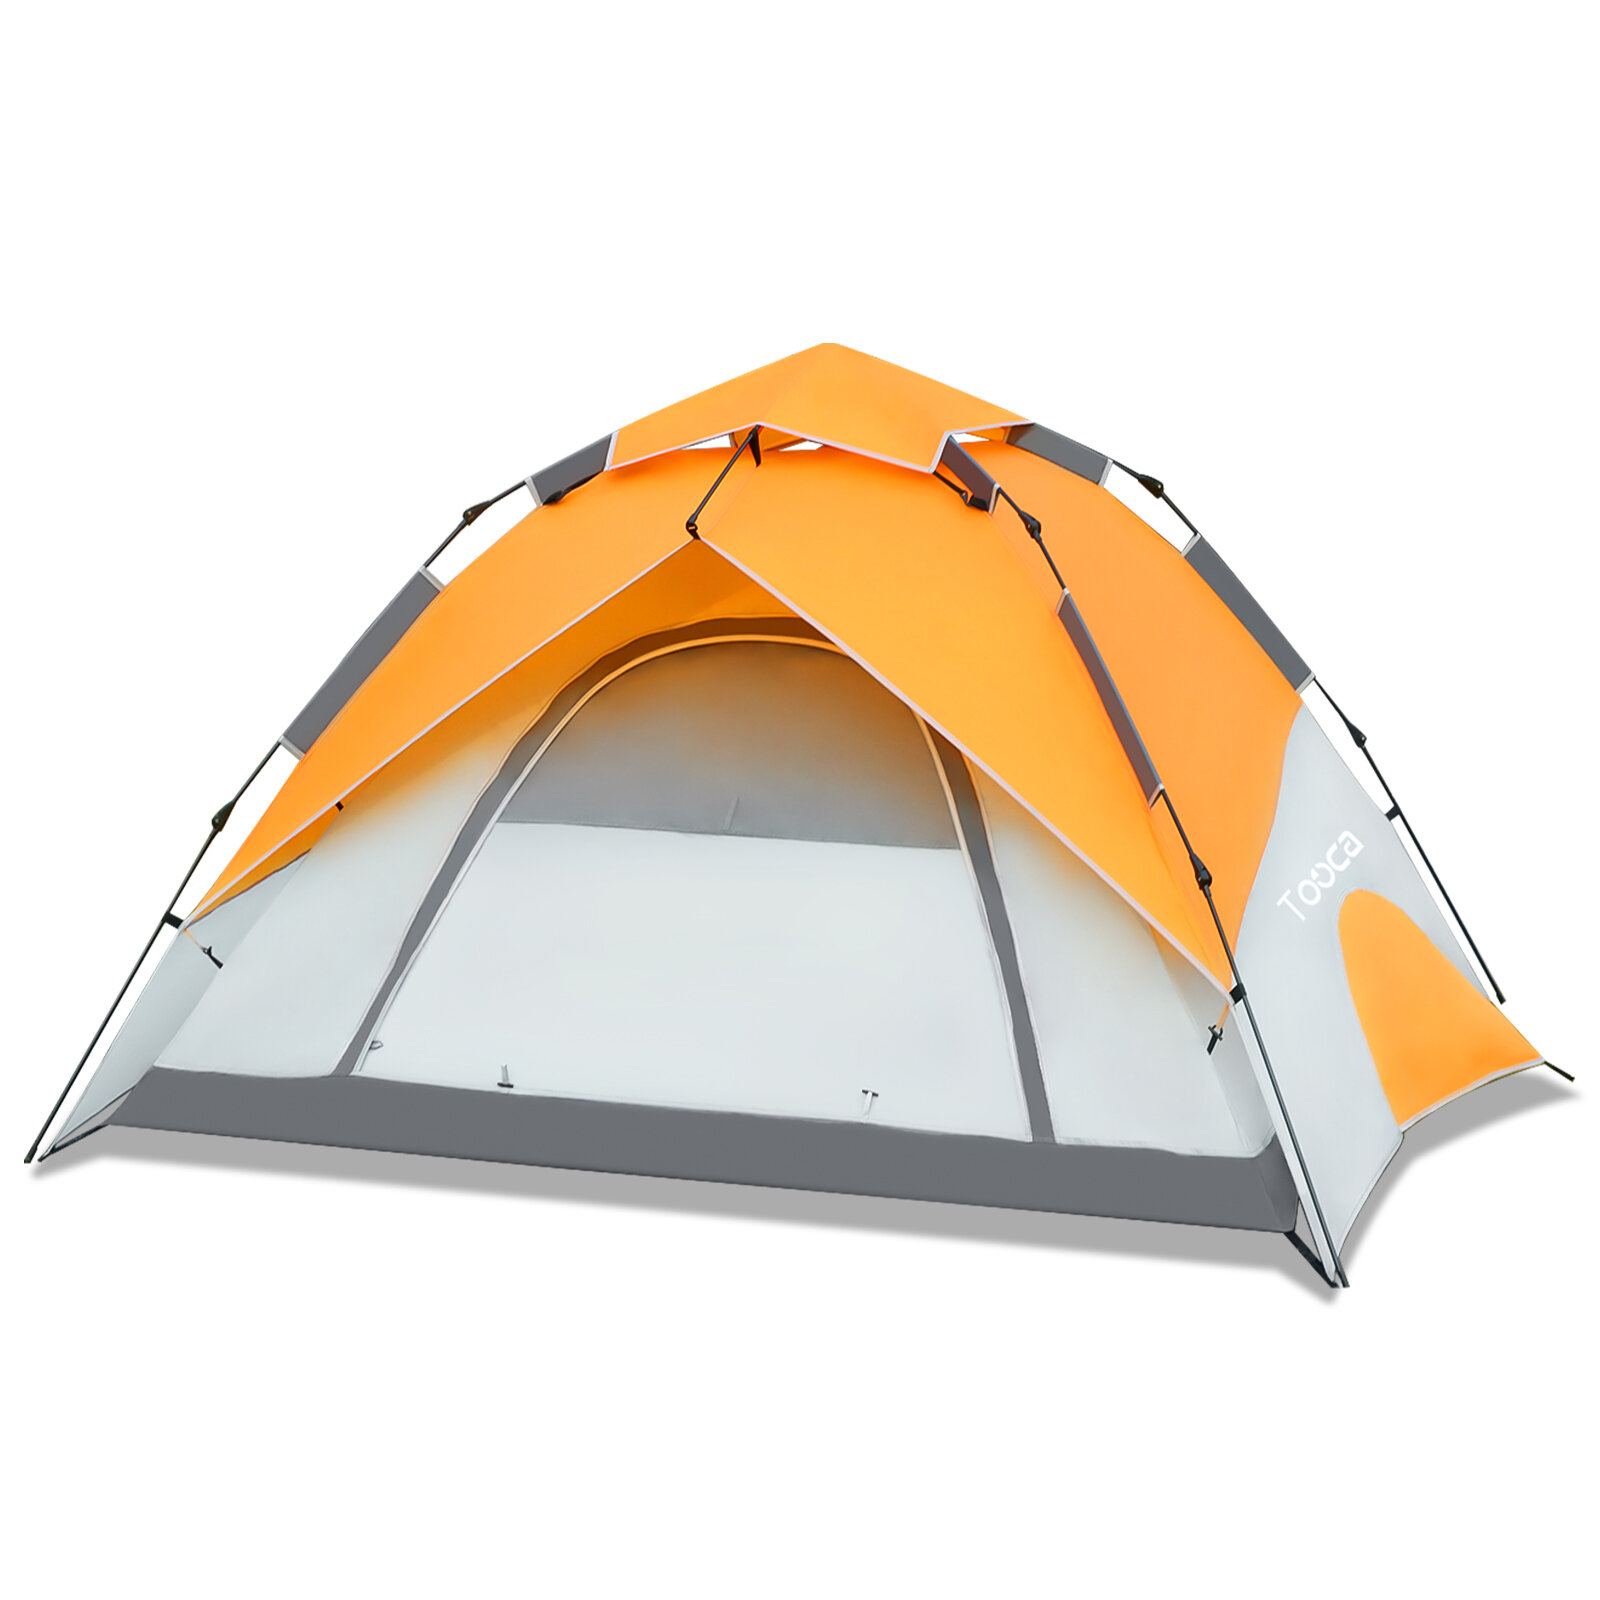 Tente de camping Tooca pour 4 personnes, montage instantané, tente dôme automatique, étanche, résistante au vent, abri de camping en plein air, protection solaire.